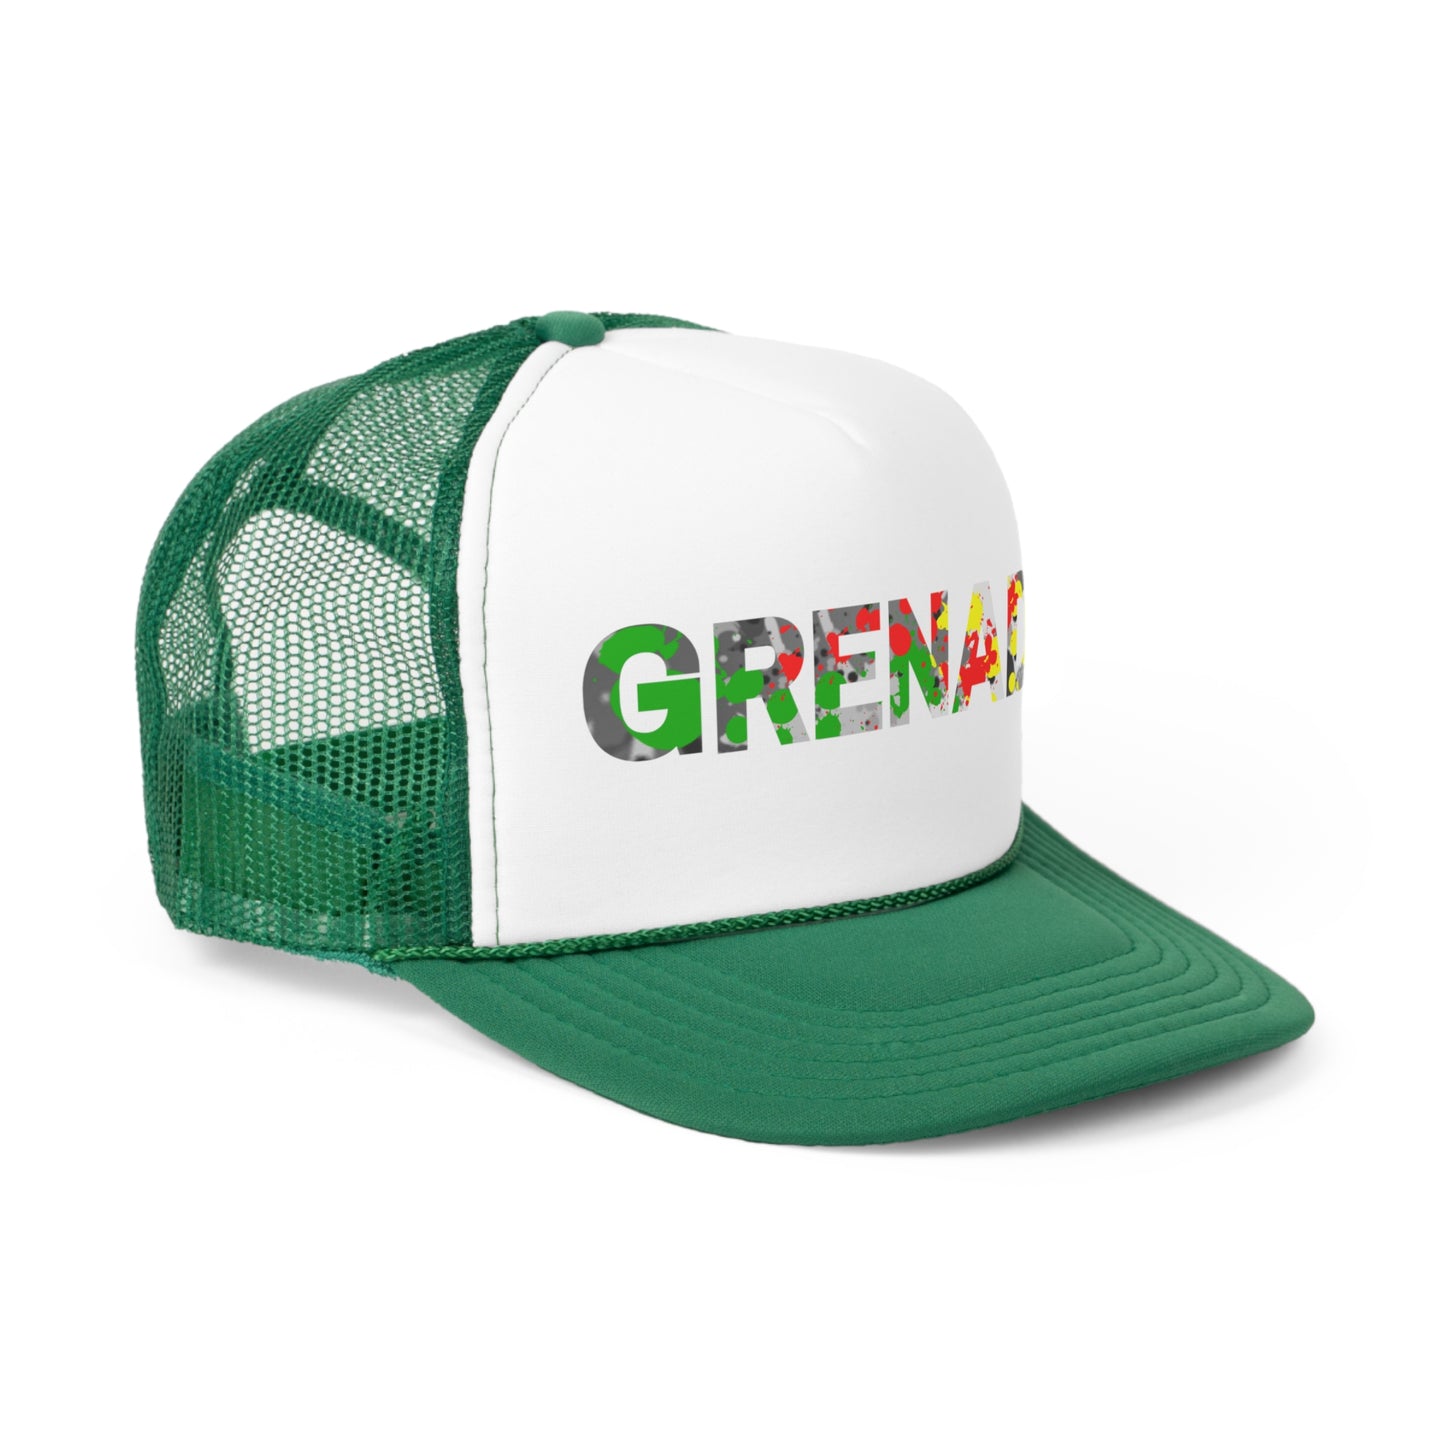 Grenada Trucker Caps